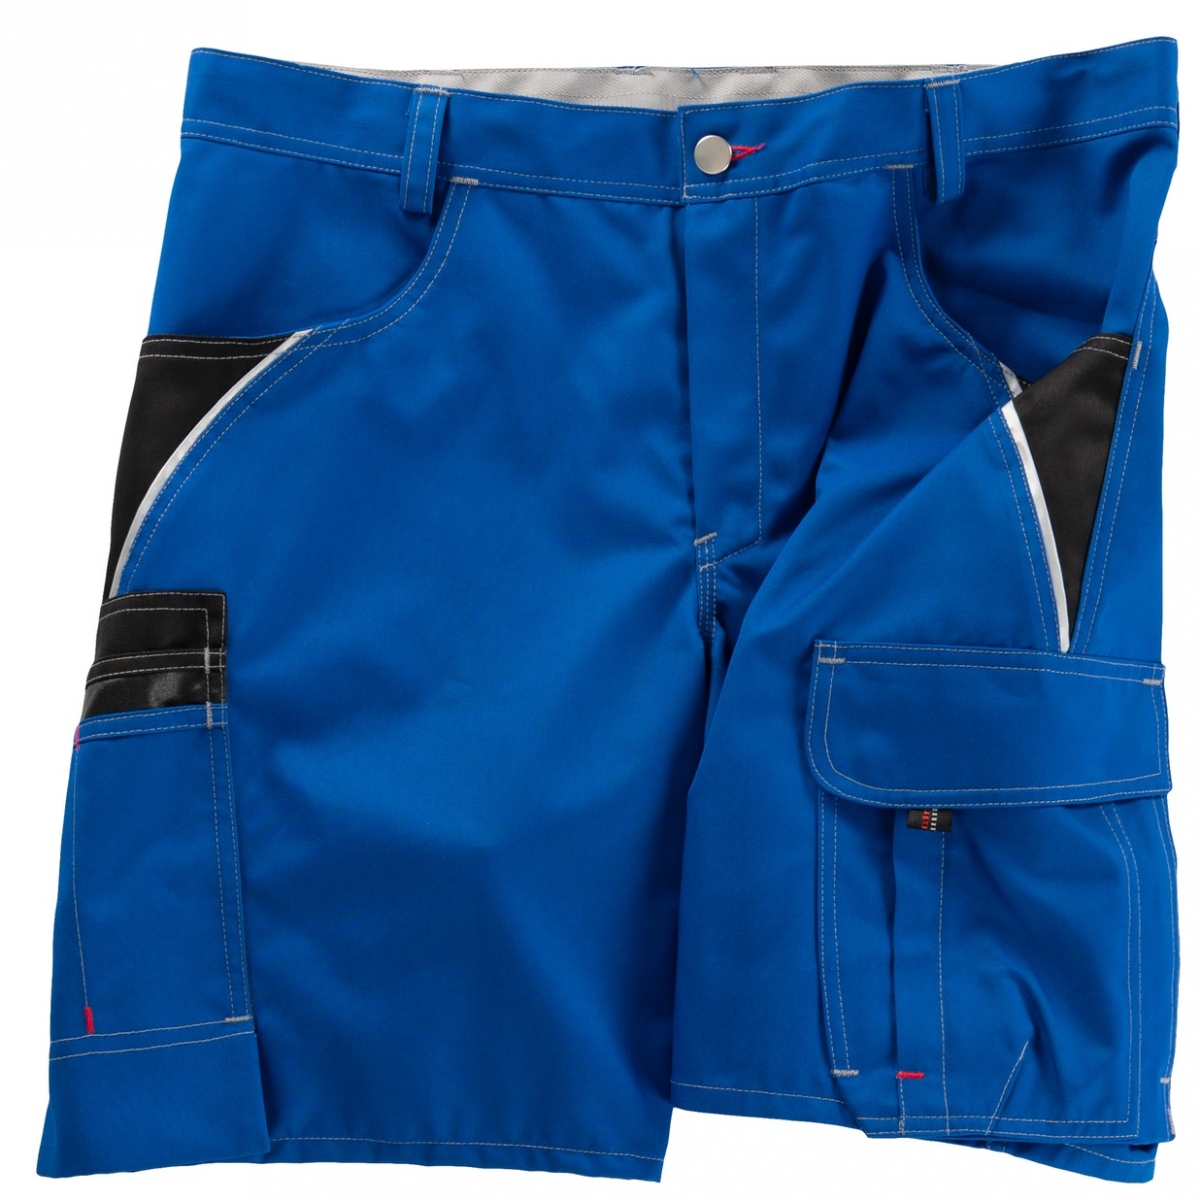 BEB-Workwear, Herren-Arbeits-Berufs-Shorts, Inflame kornblau/schwarz